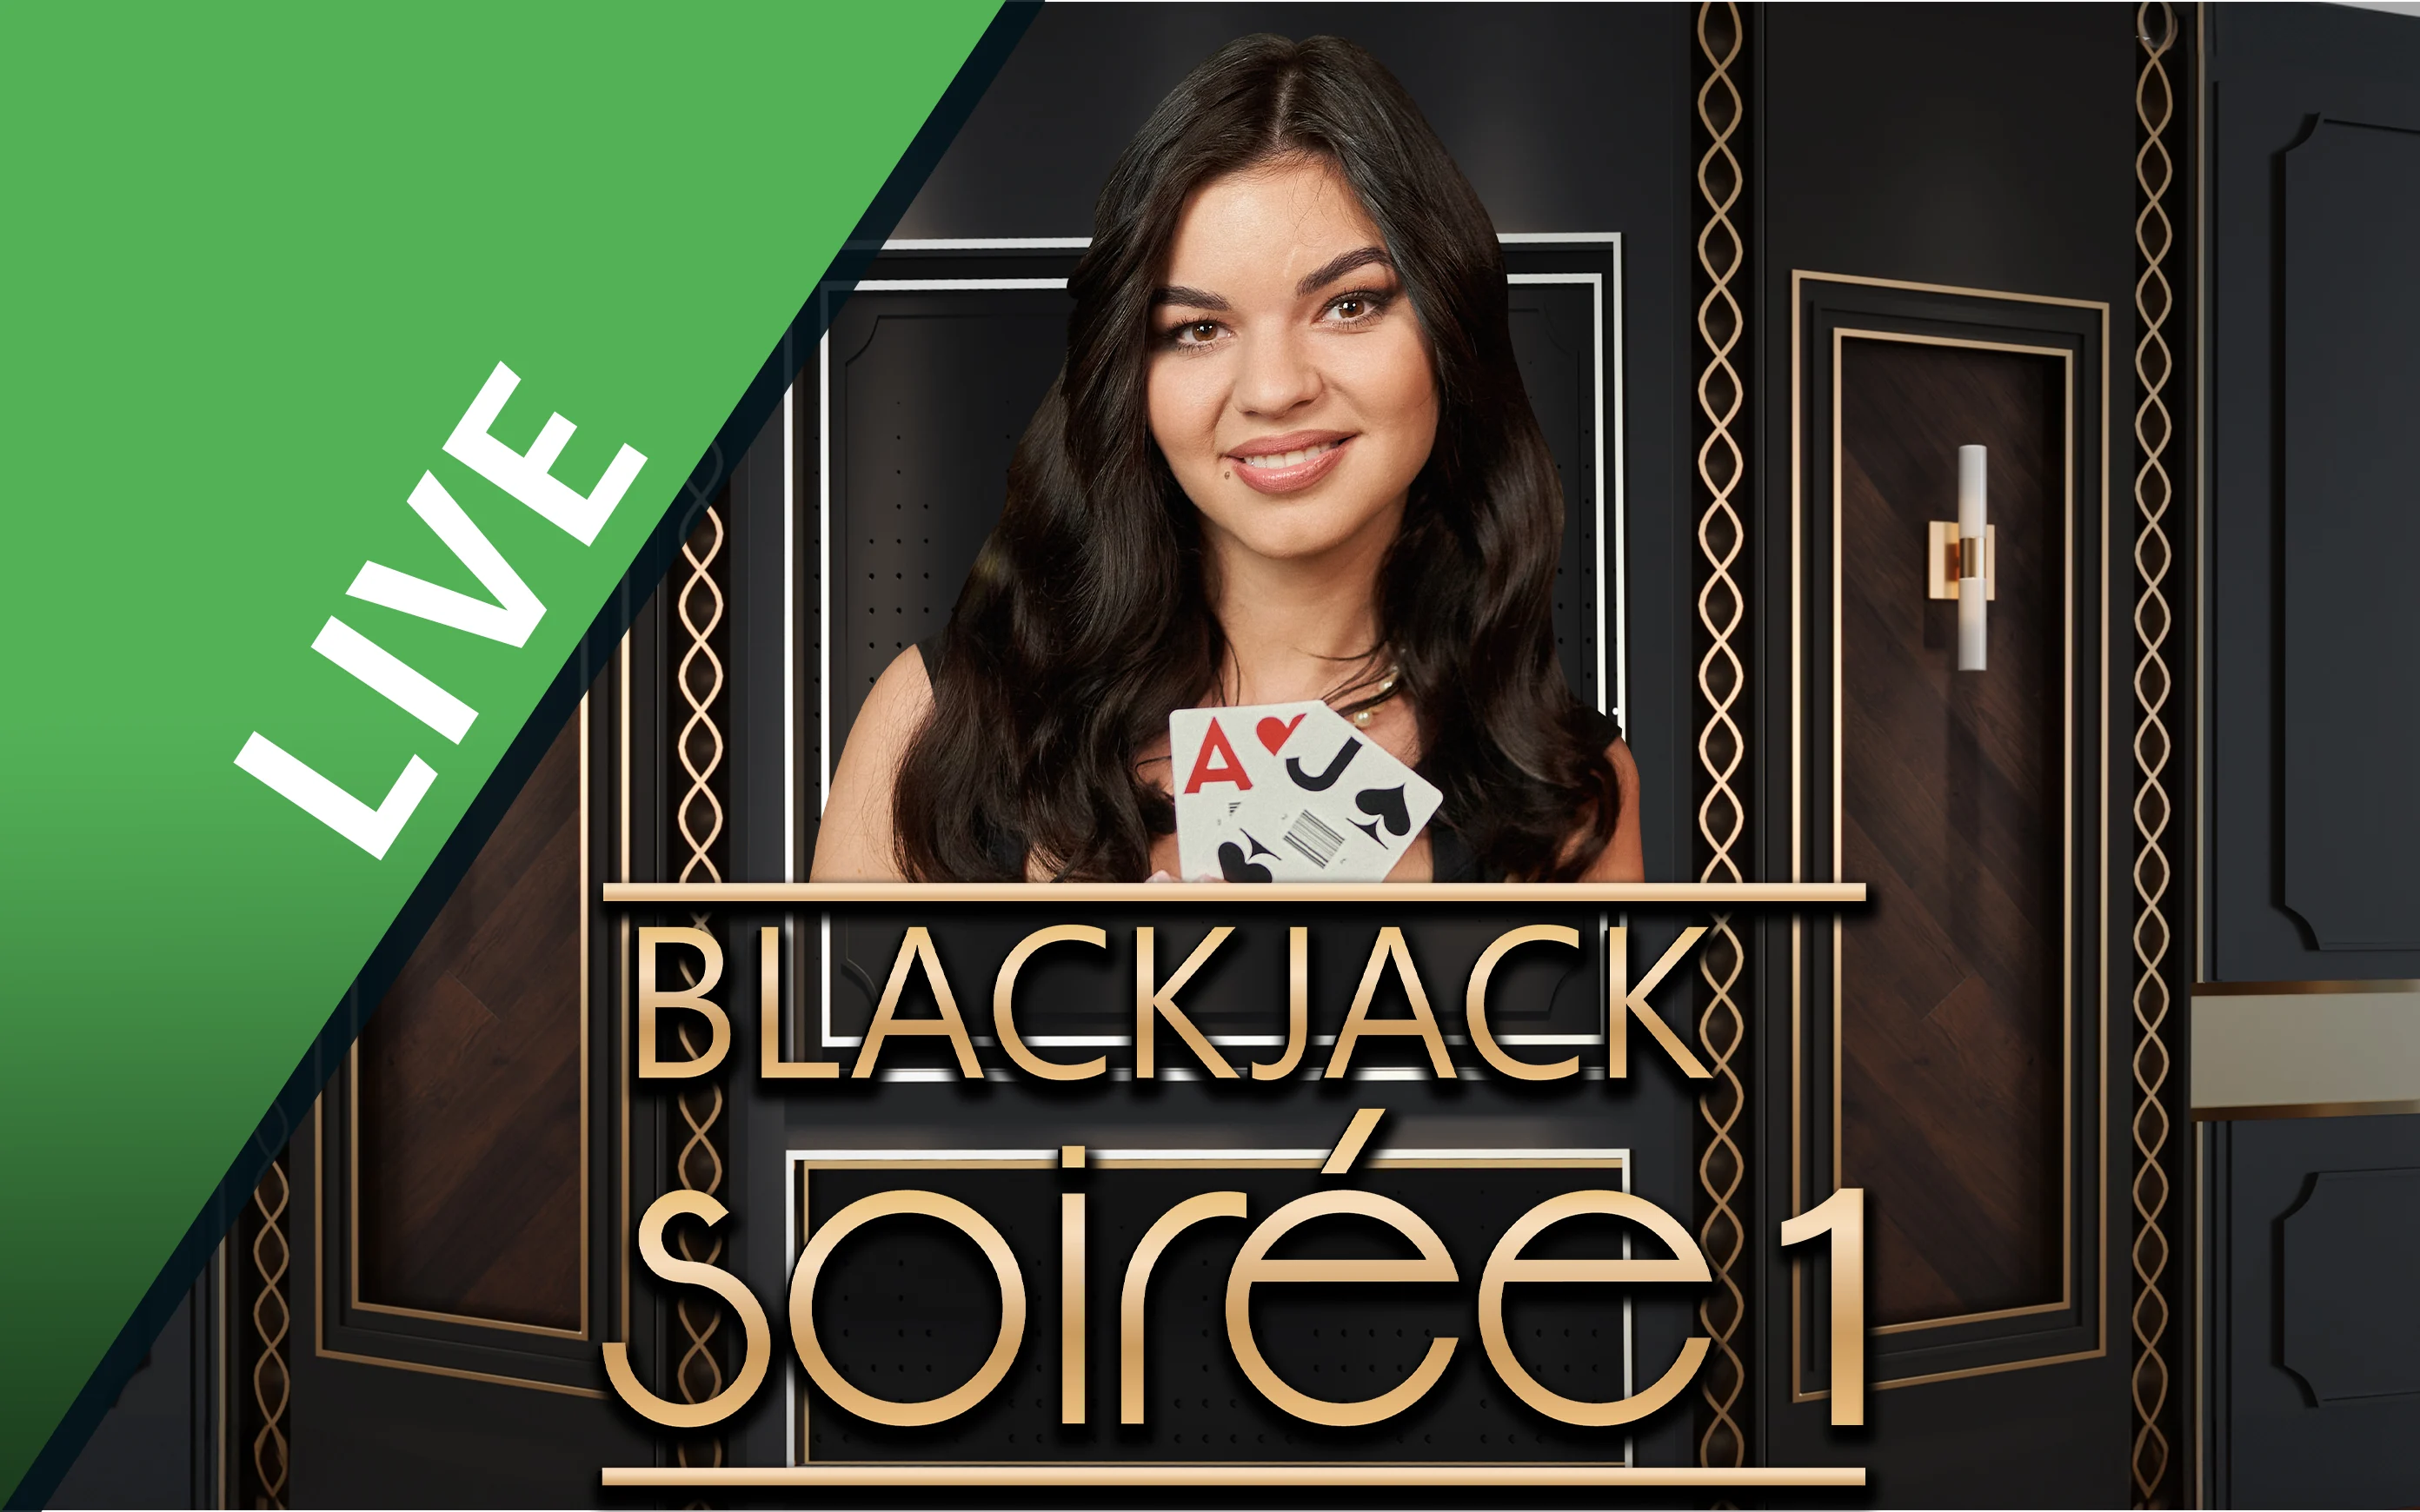 Chơi Blackjack Soirée 1 trên sòng bạc trực tuyến Starcasino.be